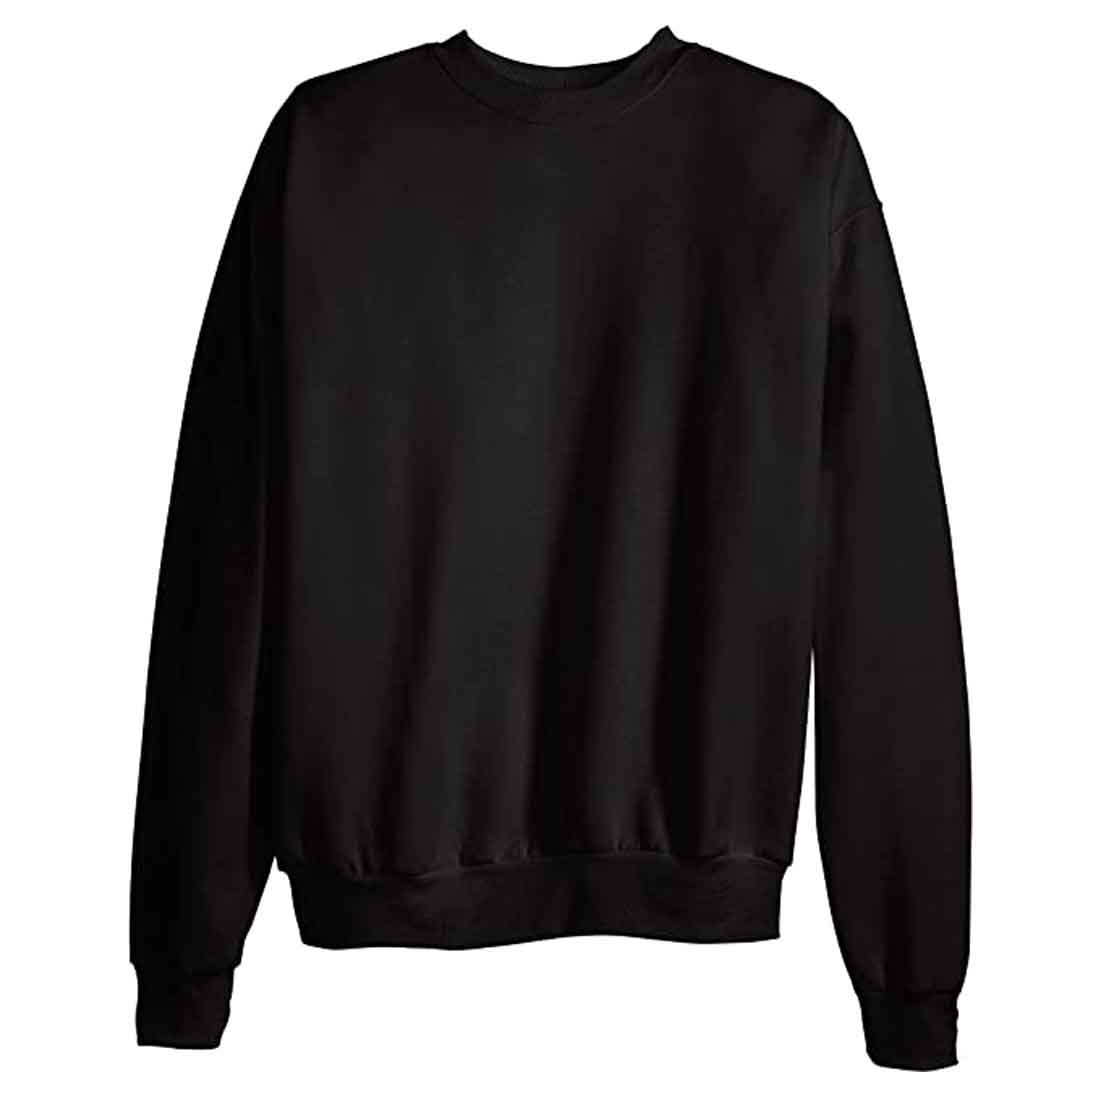 Cotton Cool Sweatshirts for Men Round Neck - Mount karan